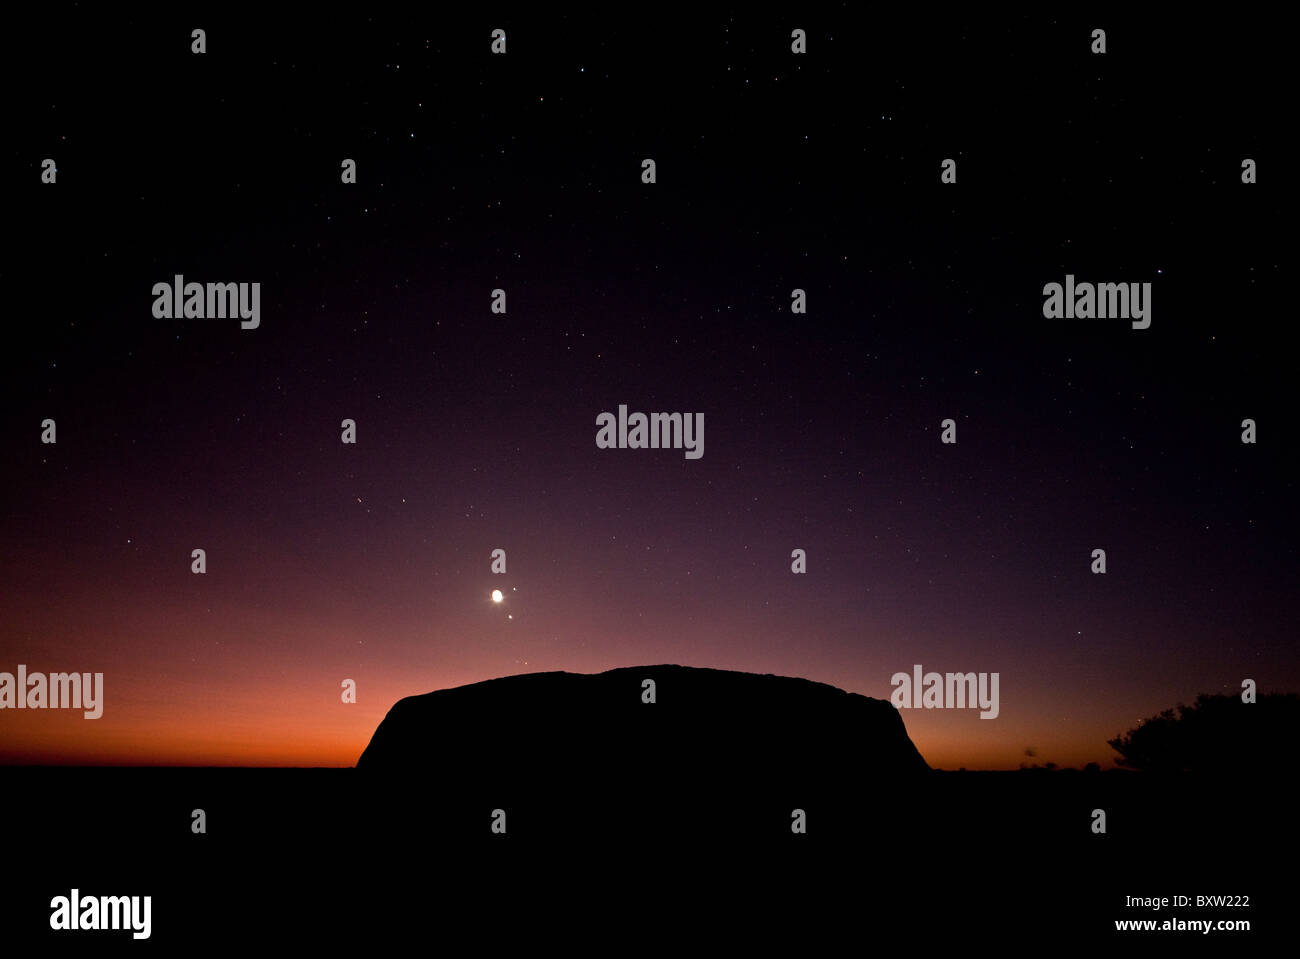 L'Australie, Territoire du Nord, Uluru - Kata Tjuta National Park, Dawn silhouettes Ayers Rock sur matin d'été dans l'arrière-pays Banque D'Images